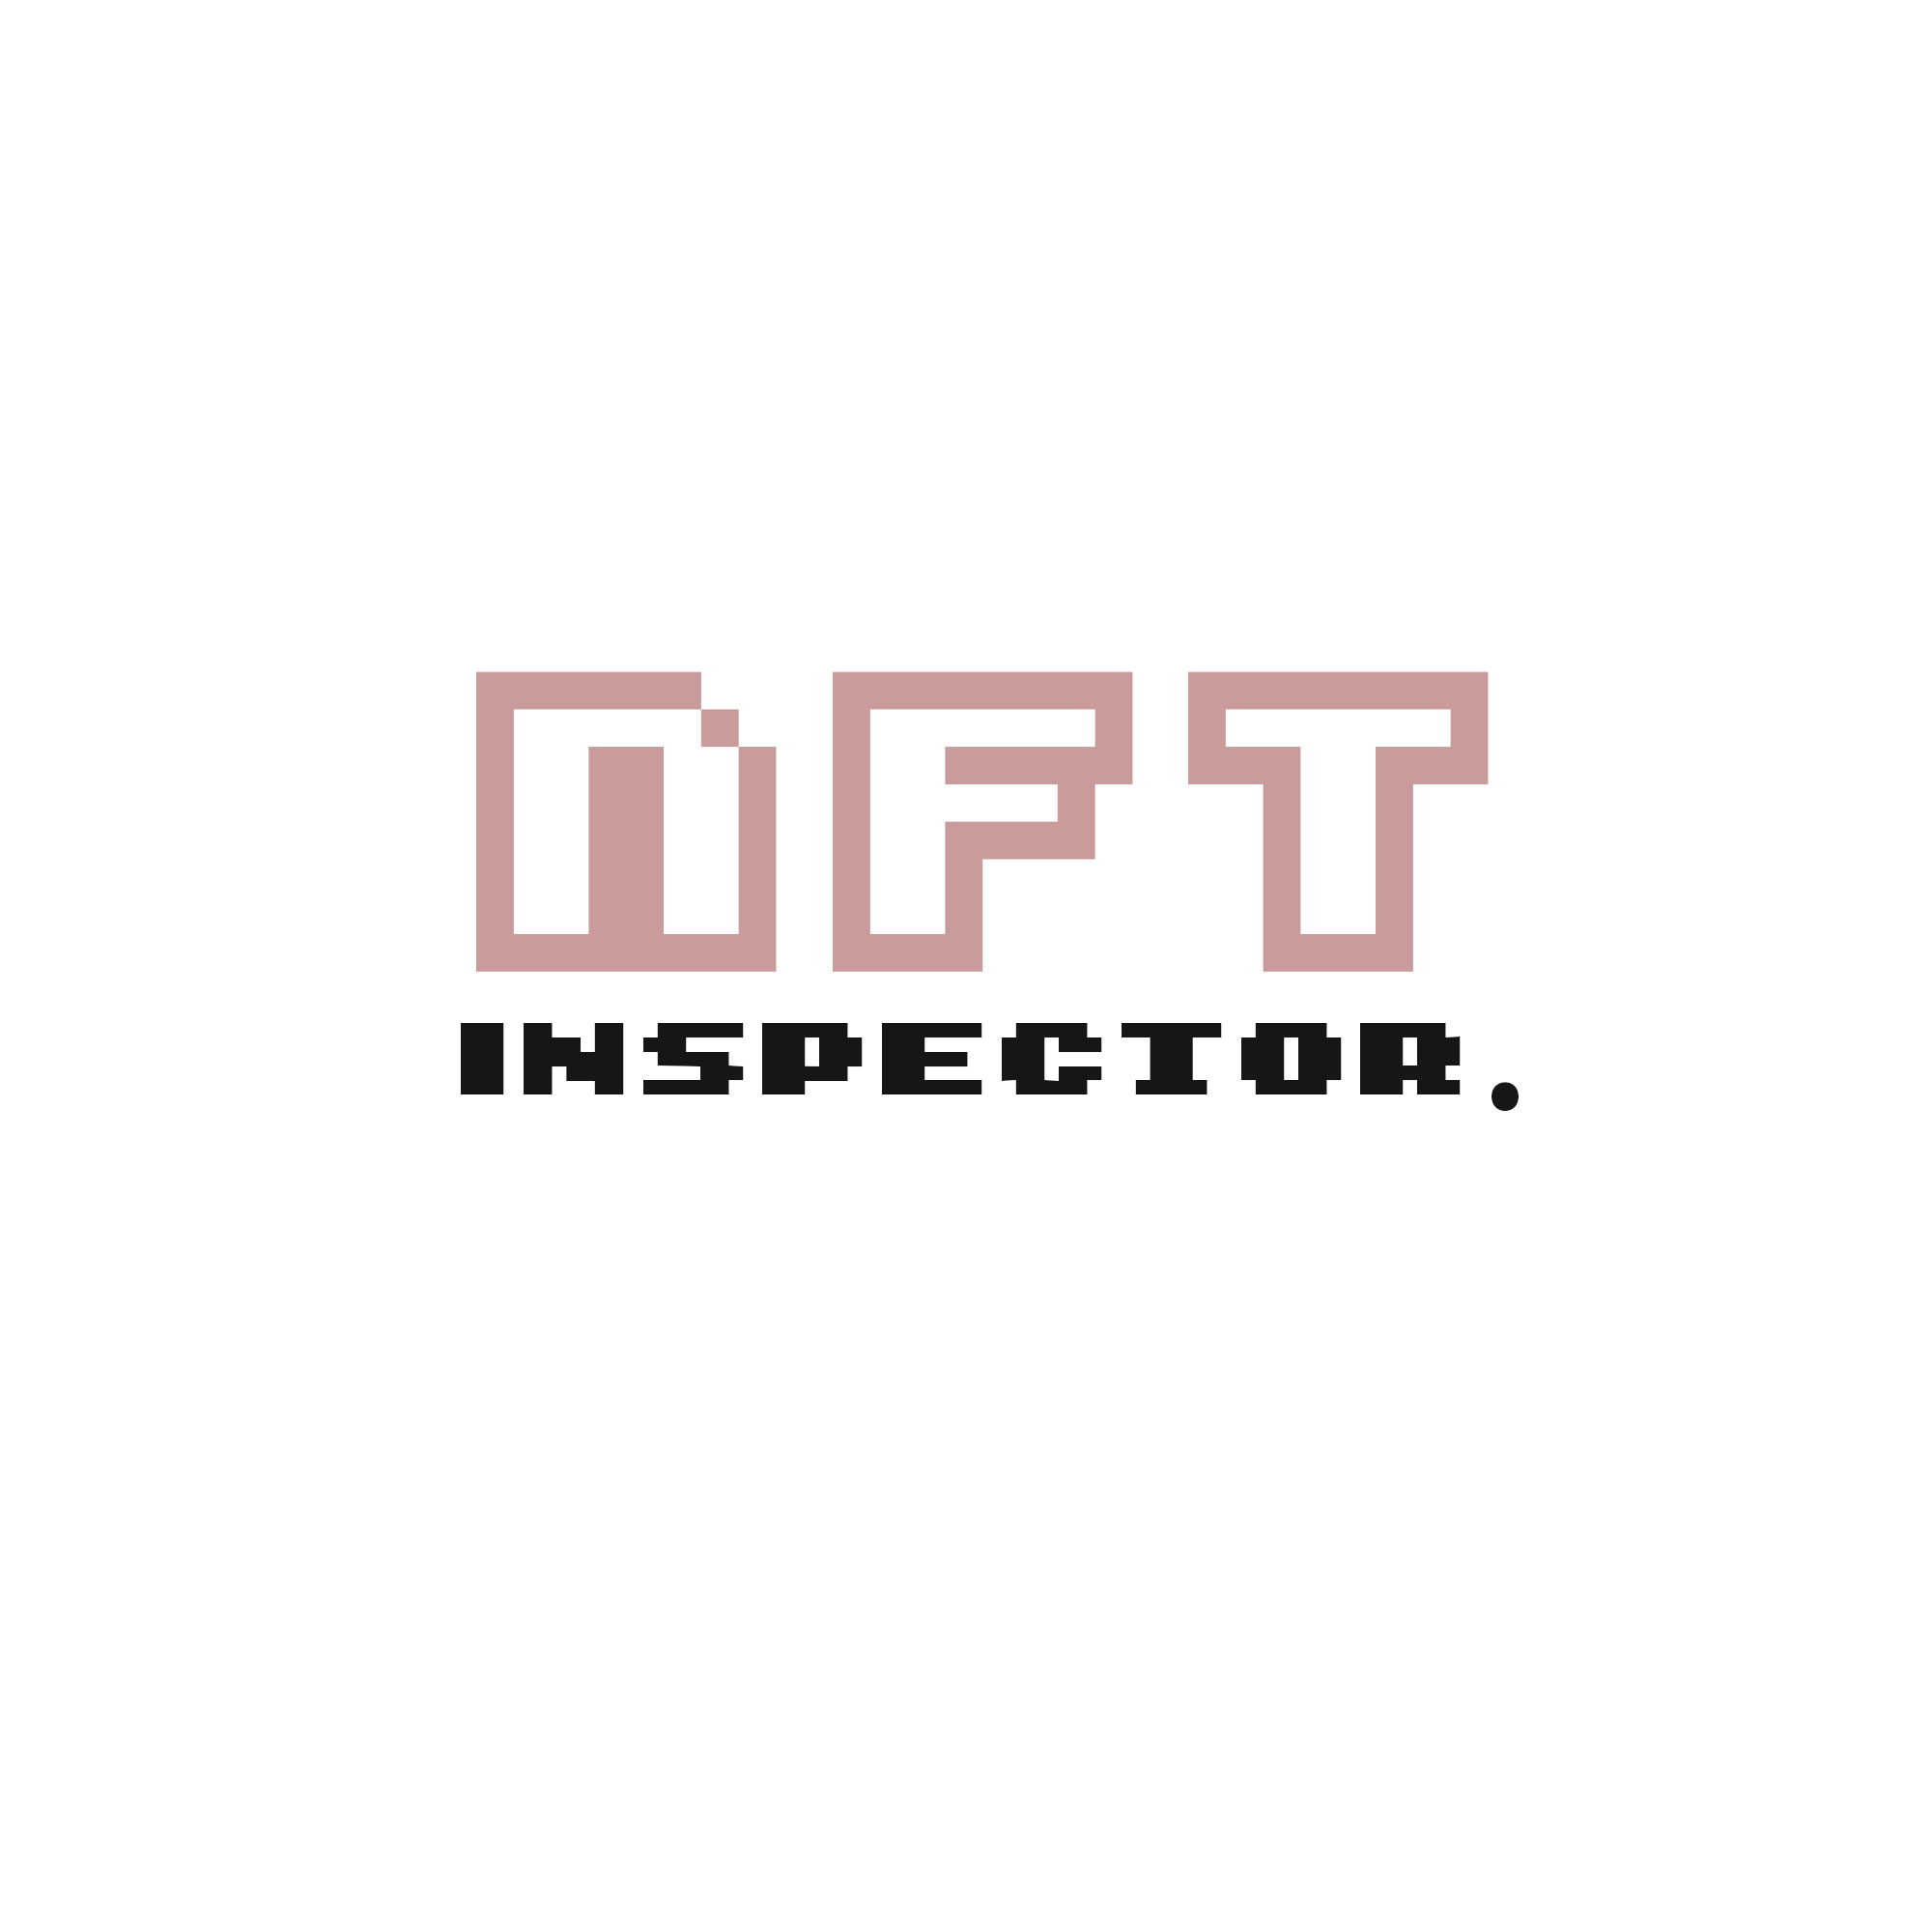 NFT Inspector